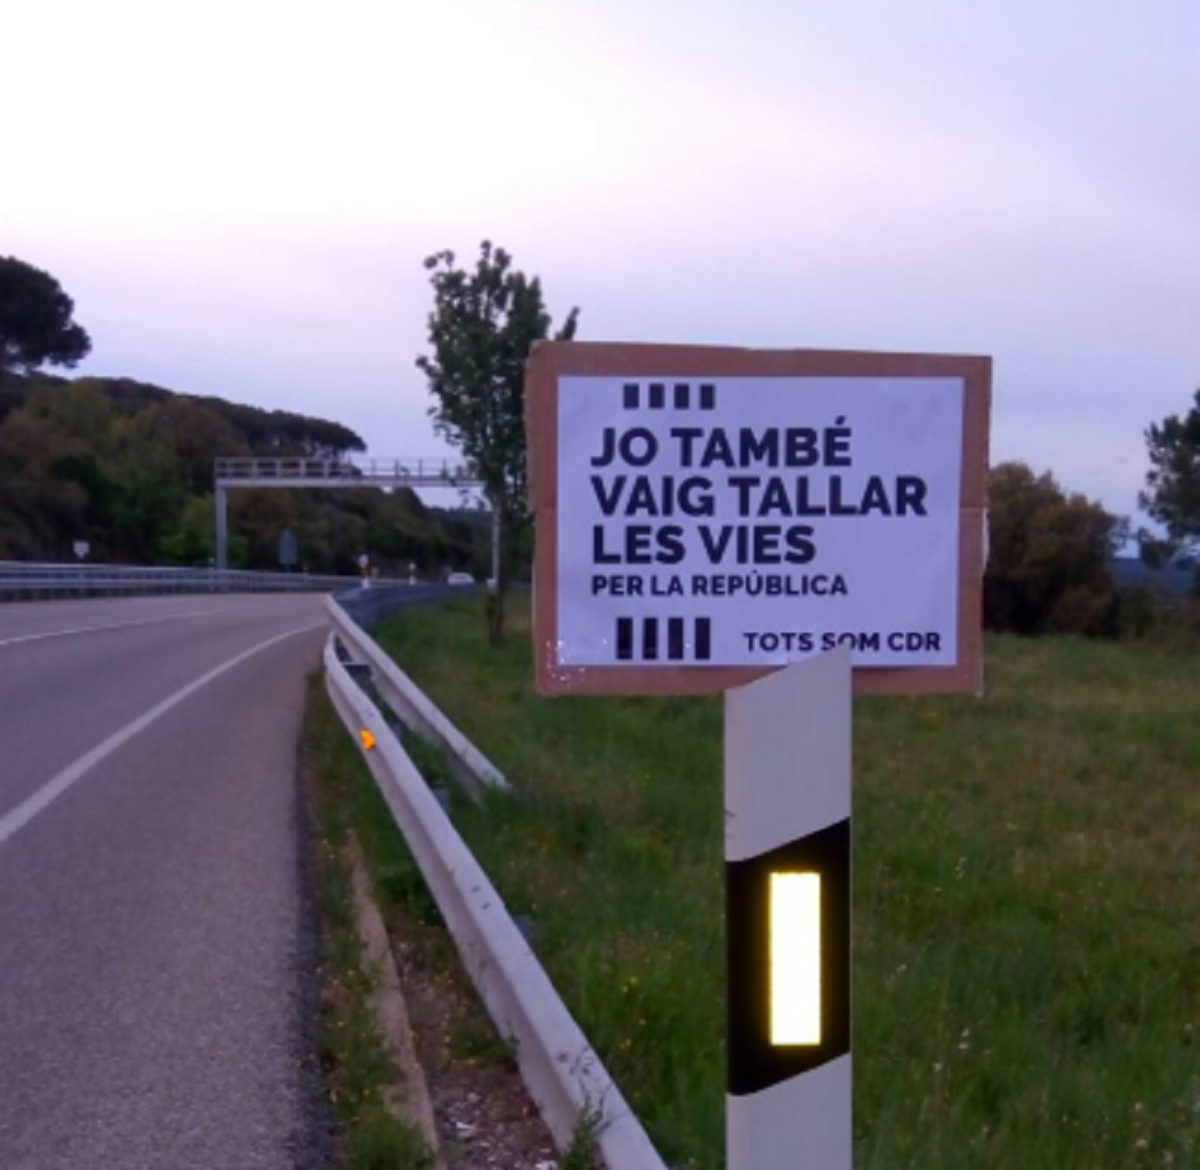 "La carretera de la República": los CDR cuelgan carteles en la N-II en Girona